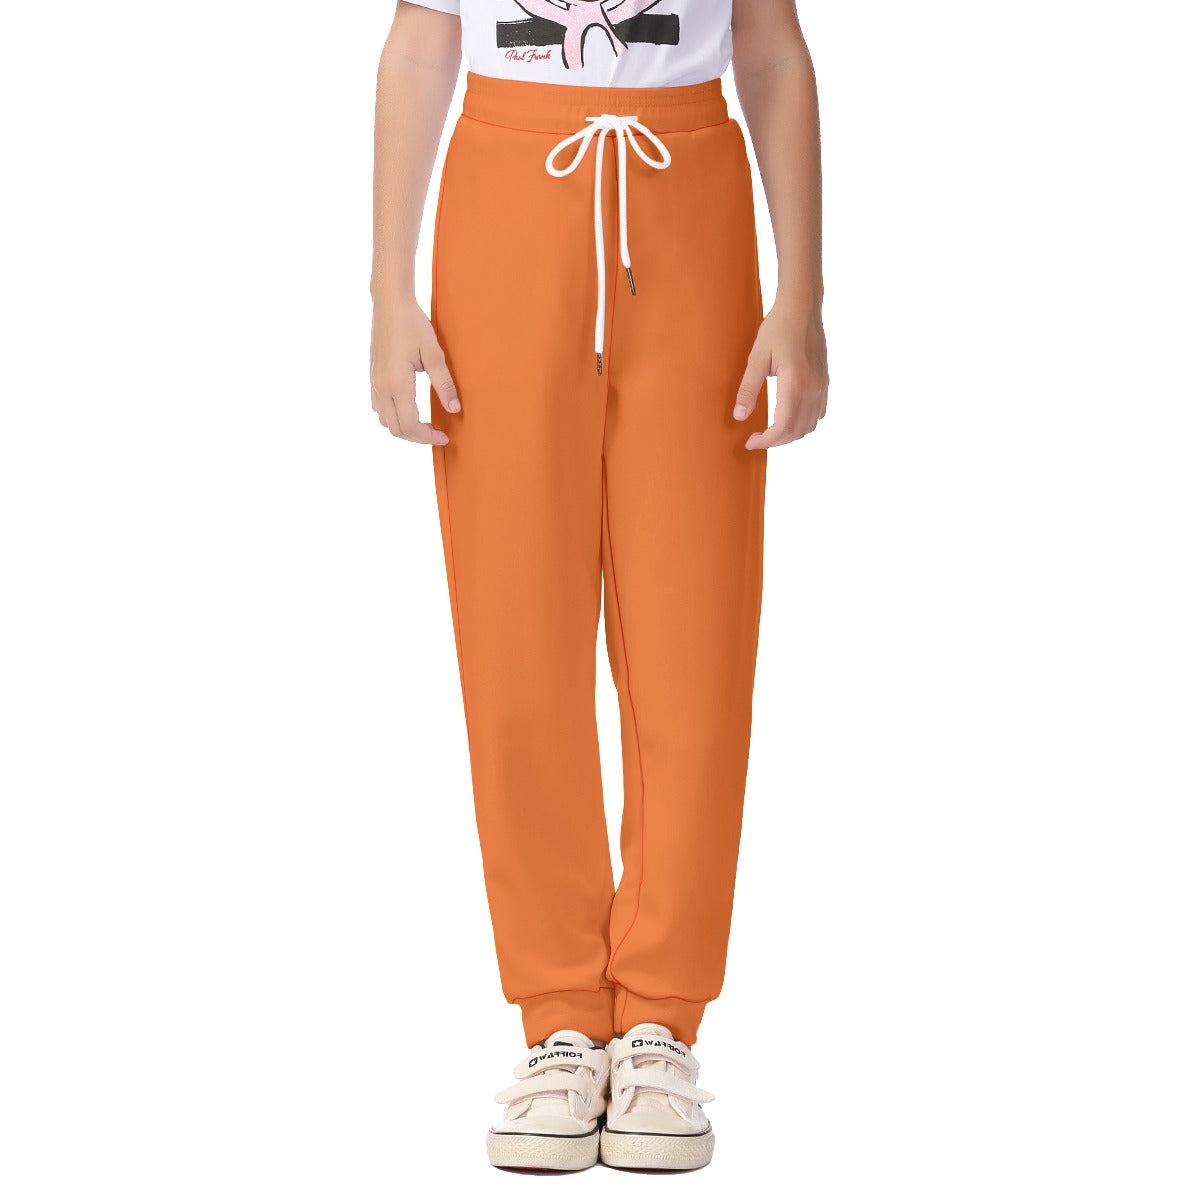 Kids Anime Ninja Orange Sweatpants Costume